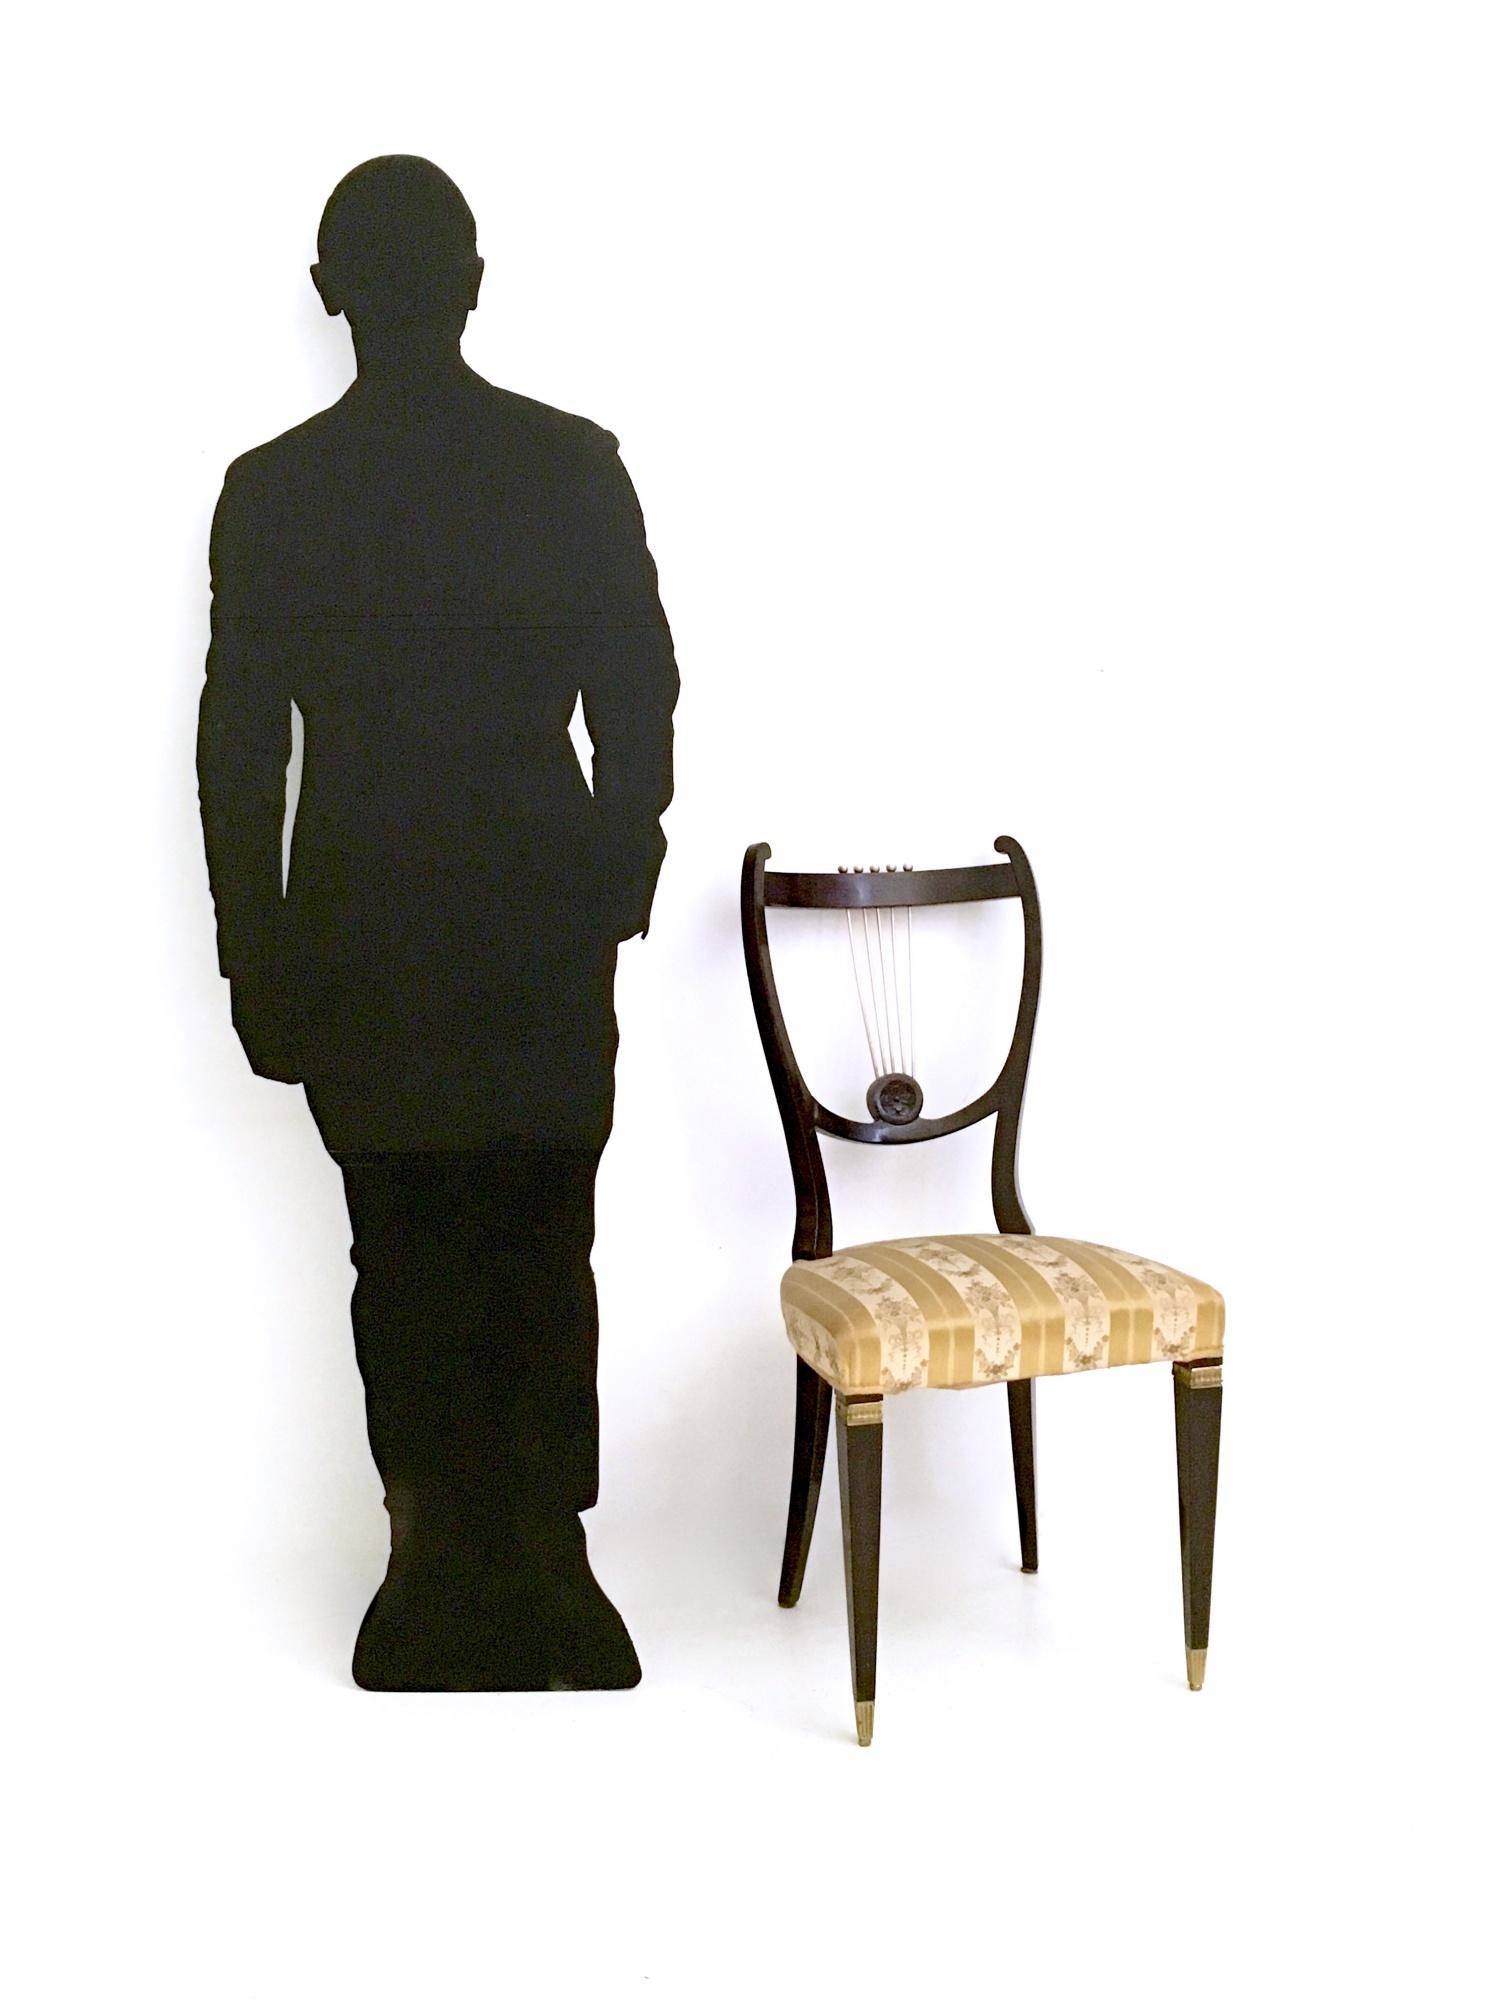 Hergestellt in Italien, 1940er - 1950er Jahre.
Diese Stühle haben ein Gestell aus Buche mit Details aus Messing und Bronze. 
Das Gestell ist in einem sehr guten Originalzustand, aber die Polsterung ist original und in unauffälligem Zustand. Sie